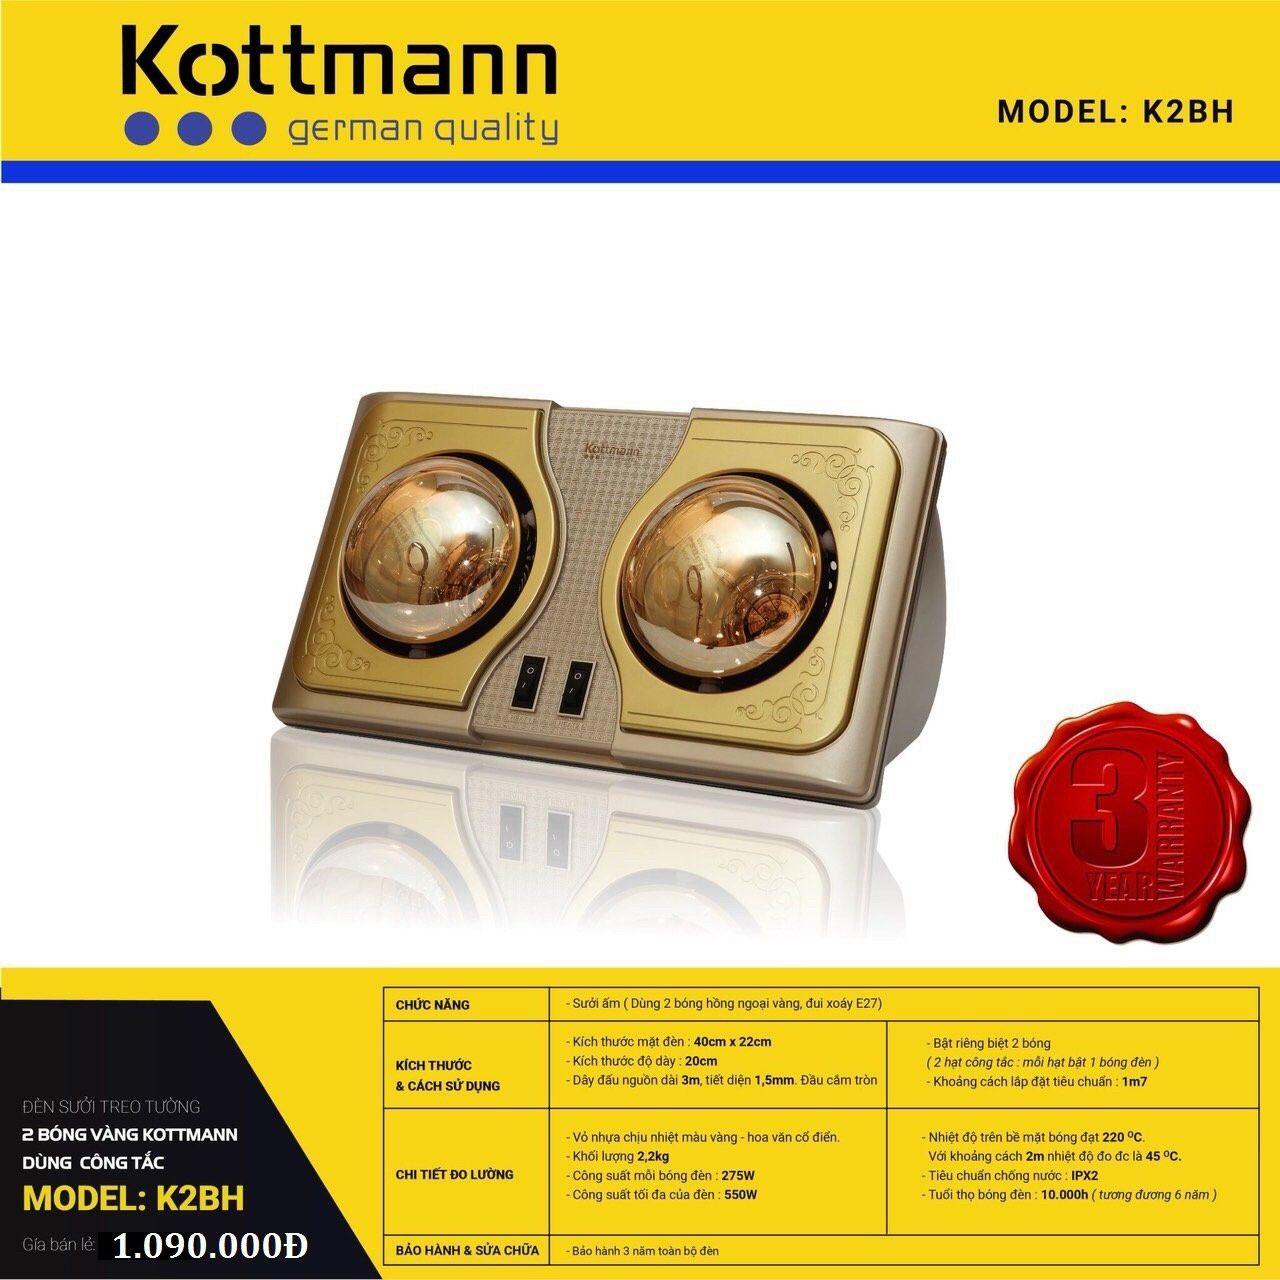 Đèn sưởi nhà tắm Kottmann 2 bóng - K2BH nhập khẩu nguyên chiếc